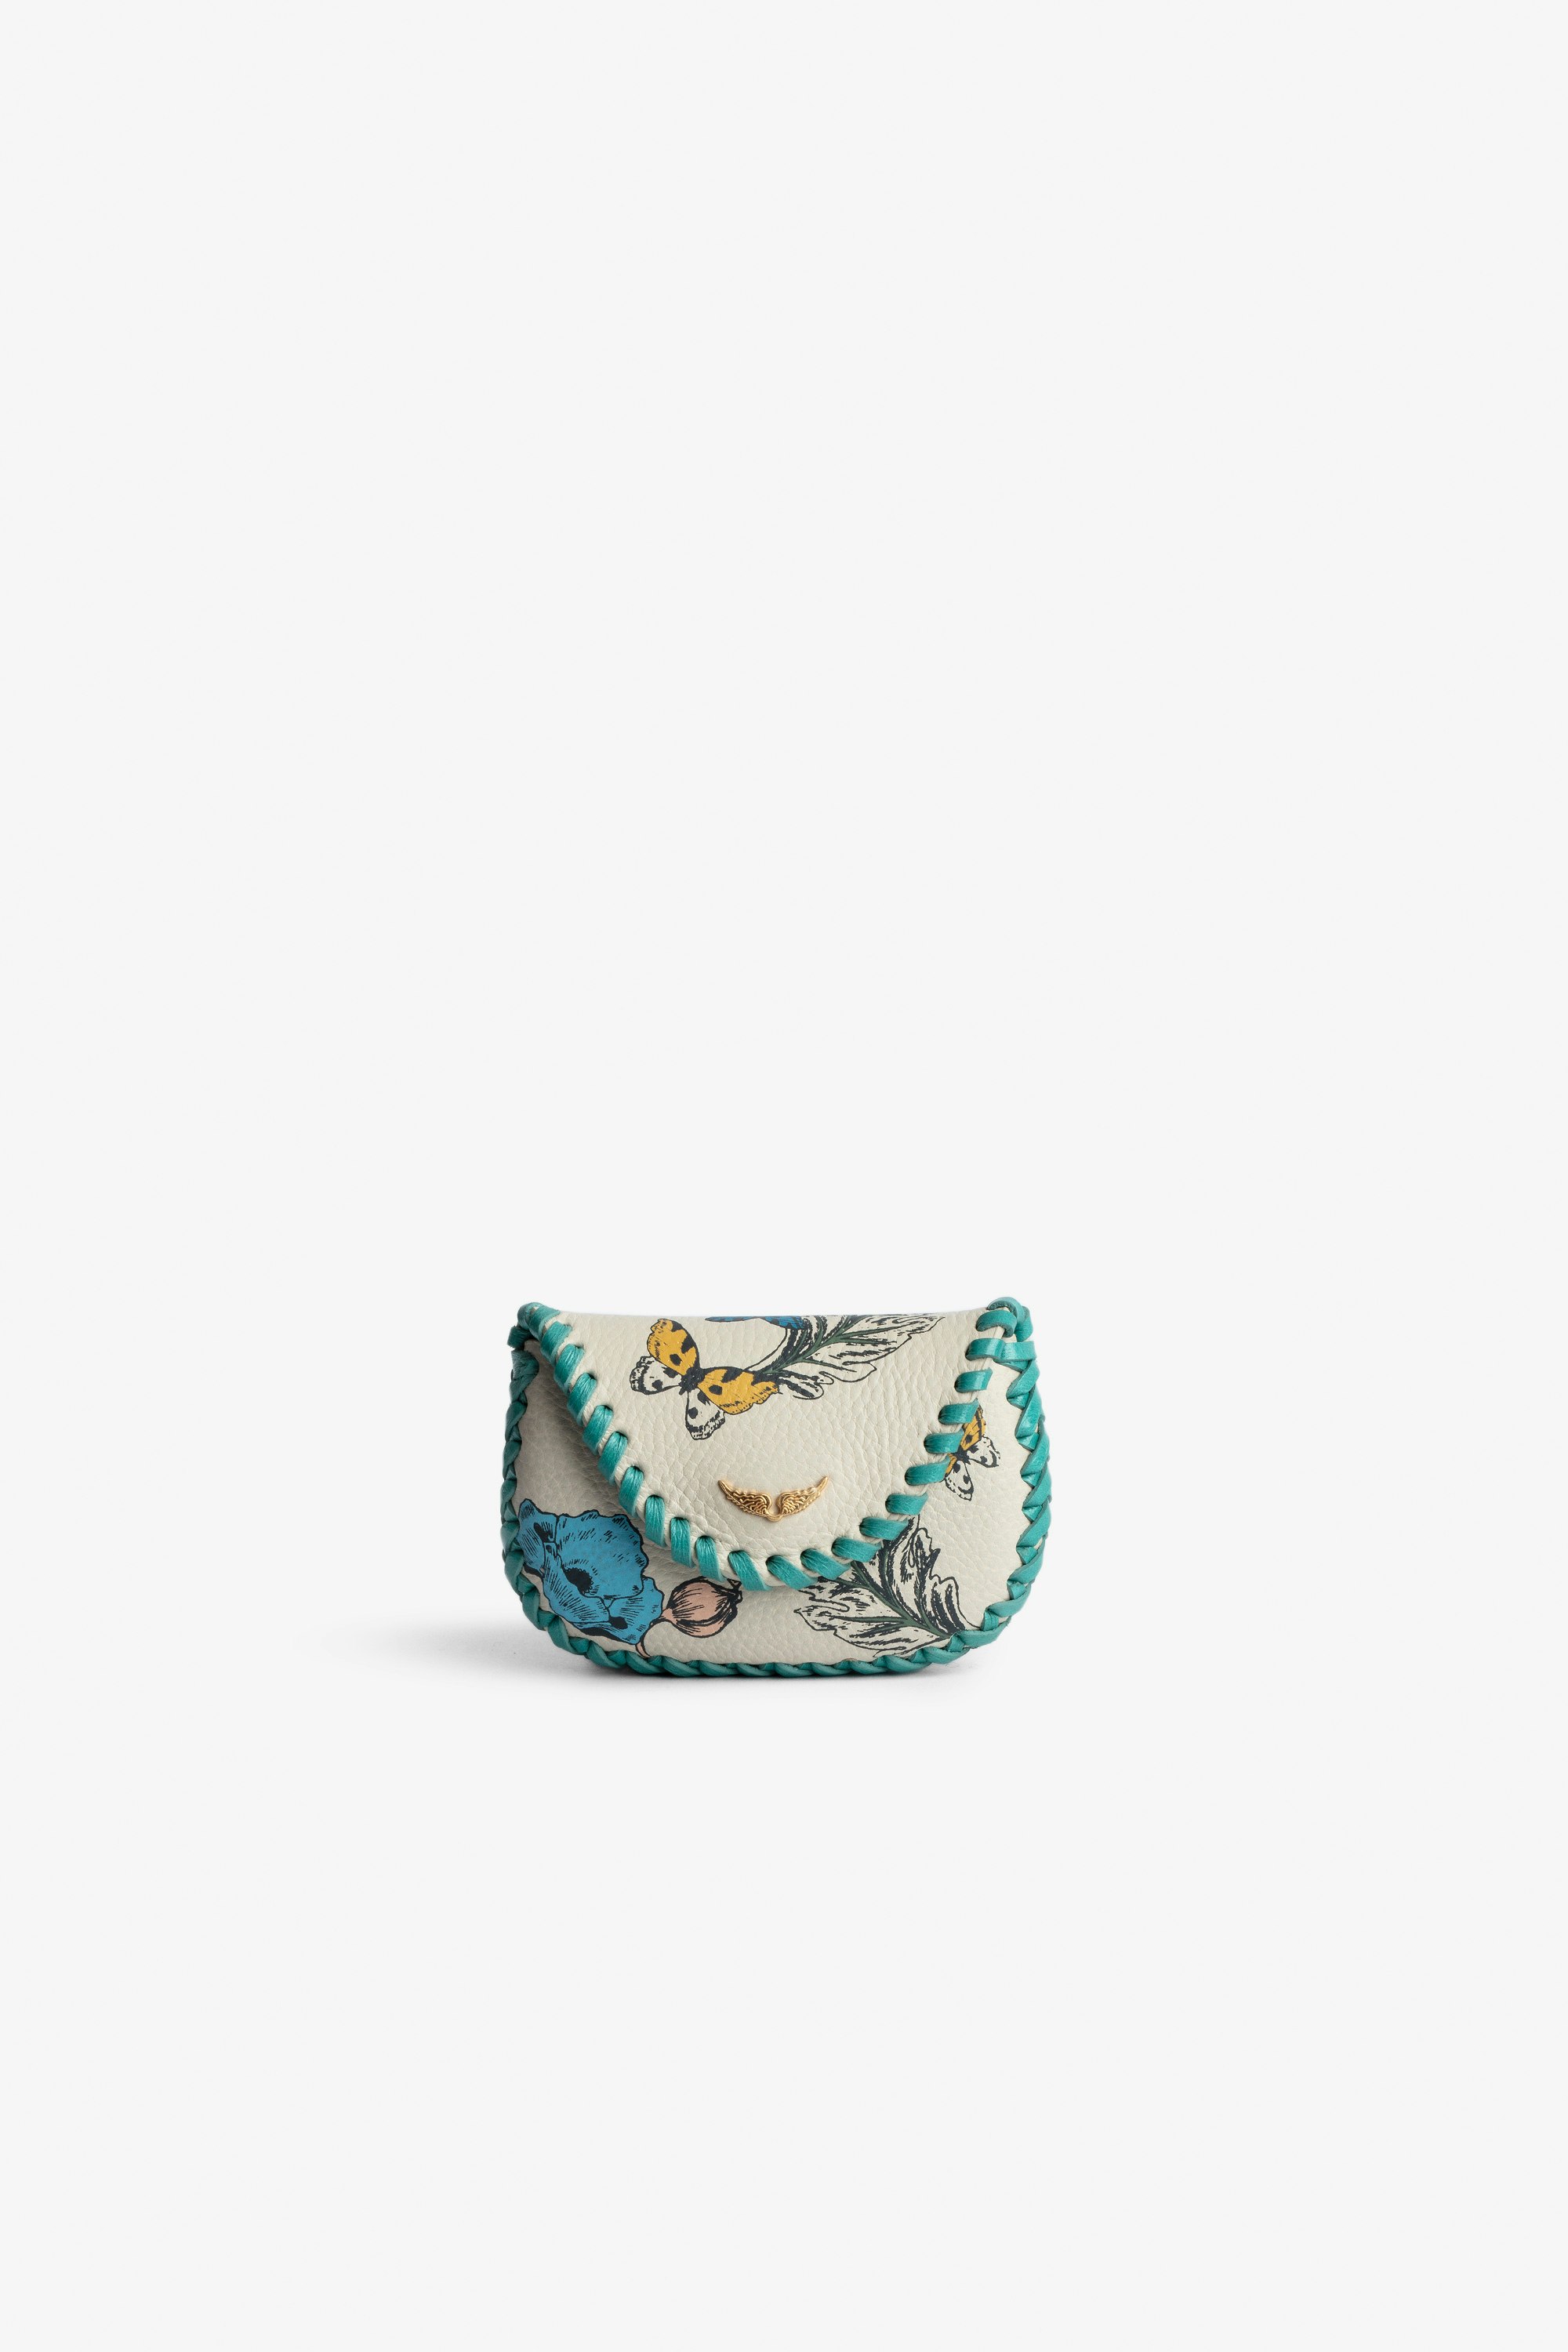 Bolso de mano Secret Minibolso de mano de color crudo de piel para mujer con estampado de flores y bordes trenzados turquesa